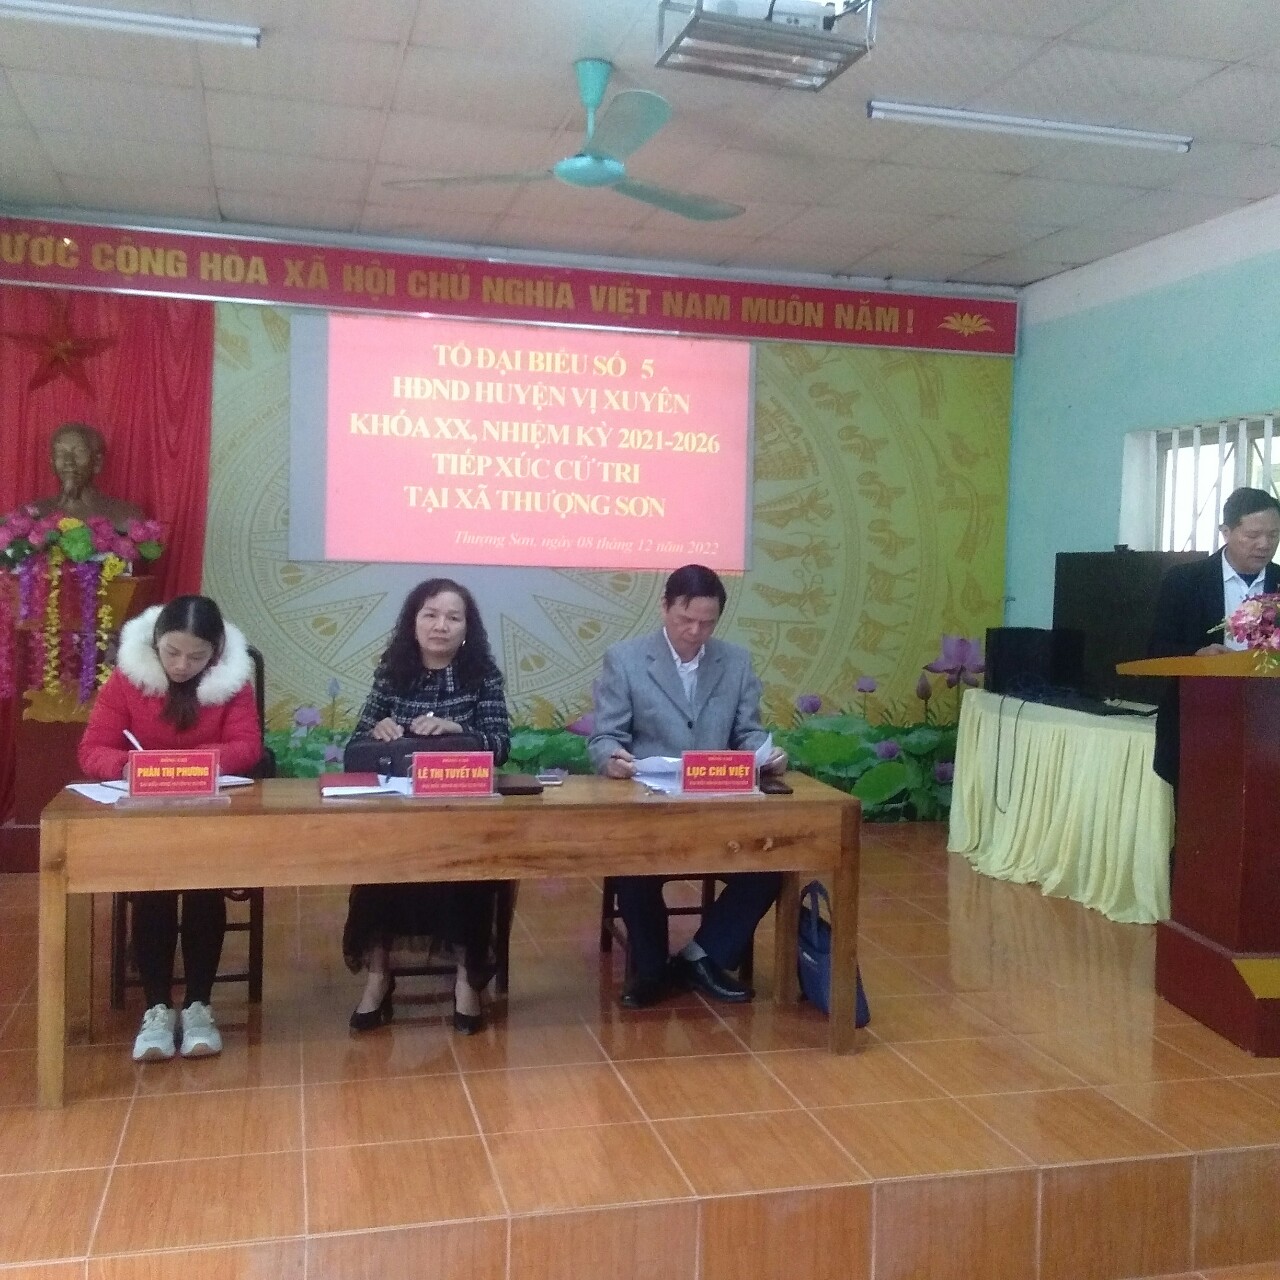 Tổ Đại biểu số 5, HĐND huyện Vị Xuyên TXCT tại xã Thượng Sơn